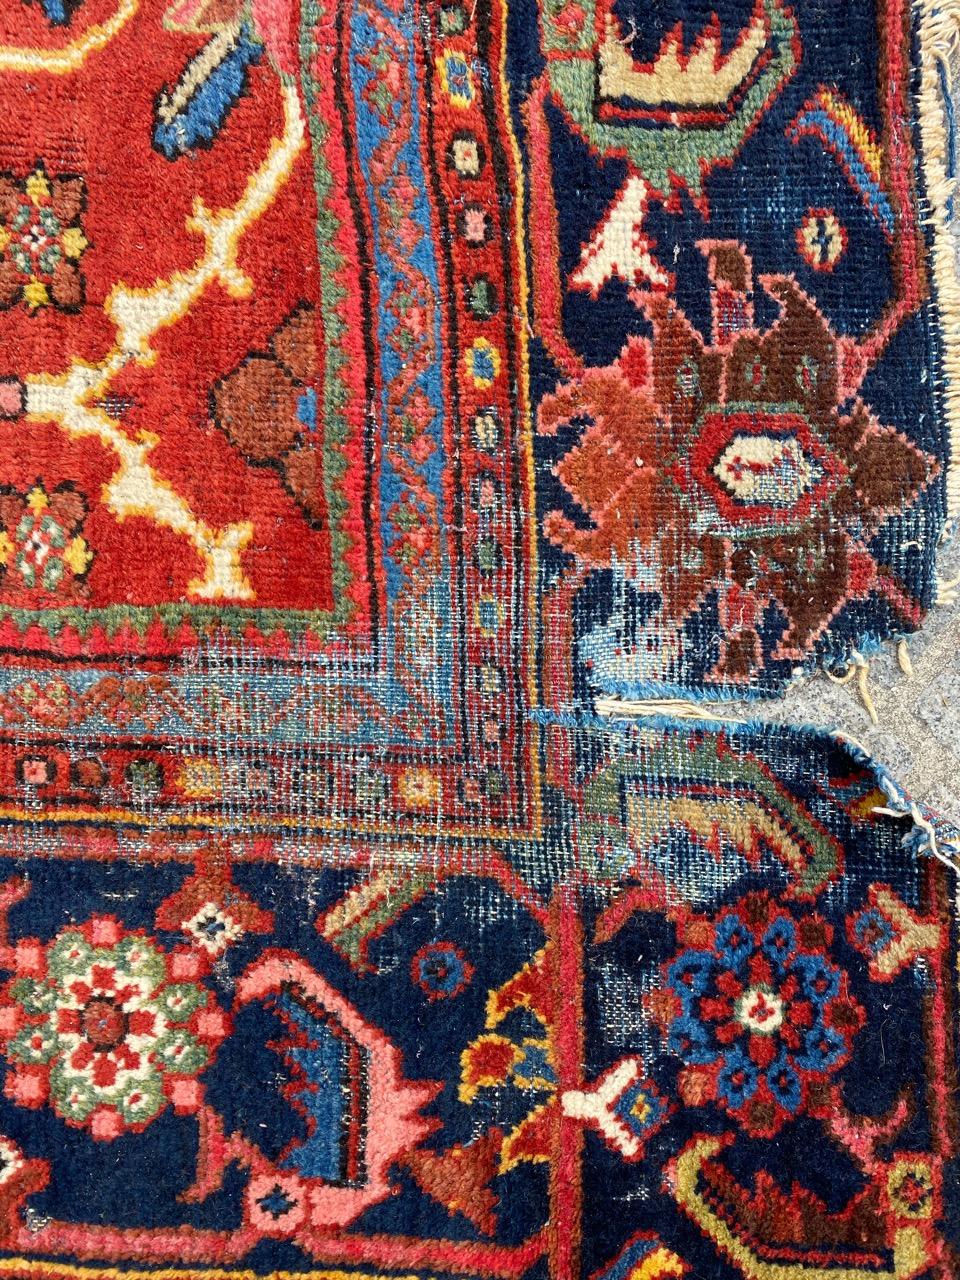 Beau tapis mahal ancien endommagé avec un beau design et de belles couleurs naturelles, entièrement noué à la main avec du velours de laine sur une base de coton.